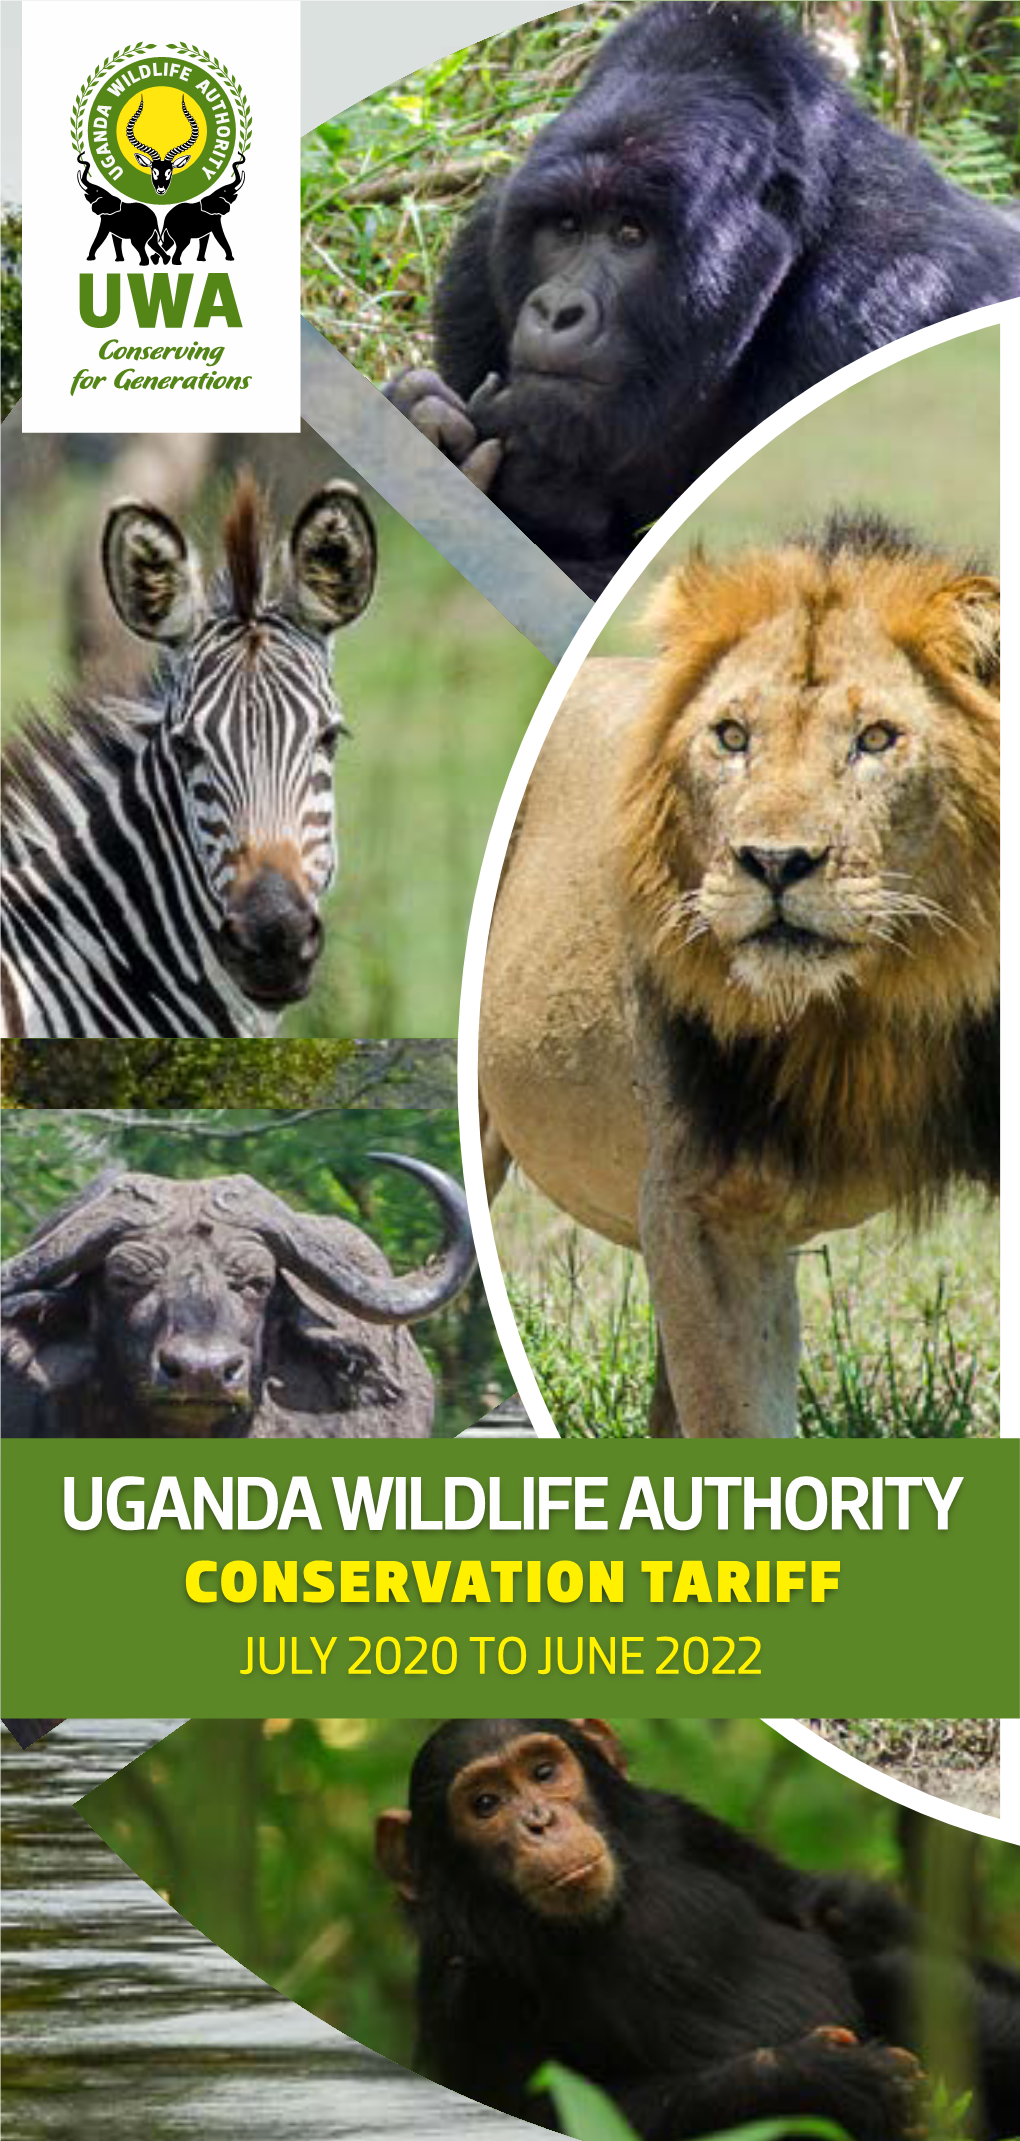 Uganda Wildlife Authority Tariff of July 2020 to June 2022